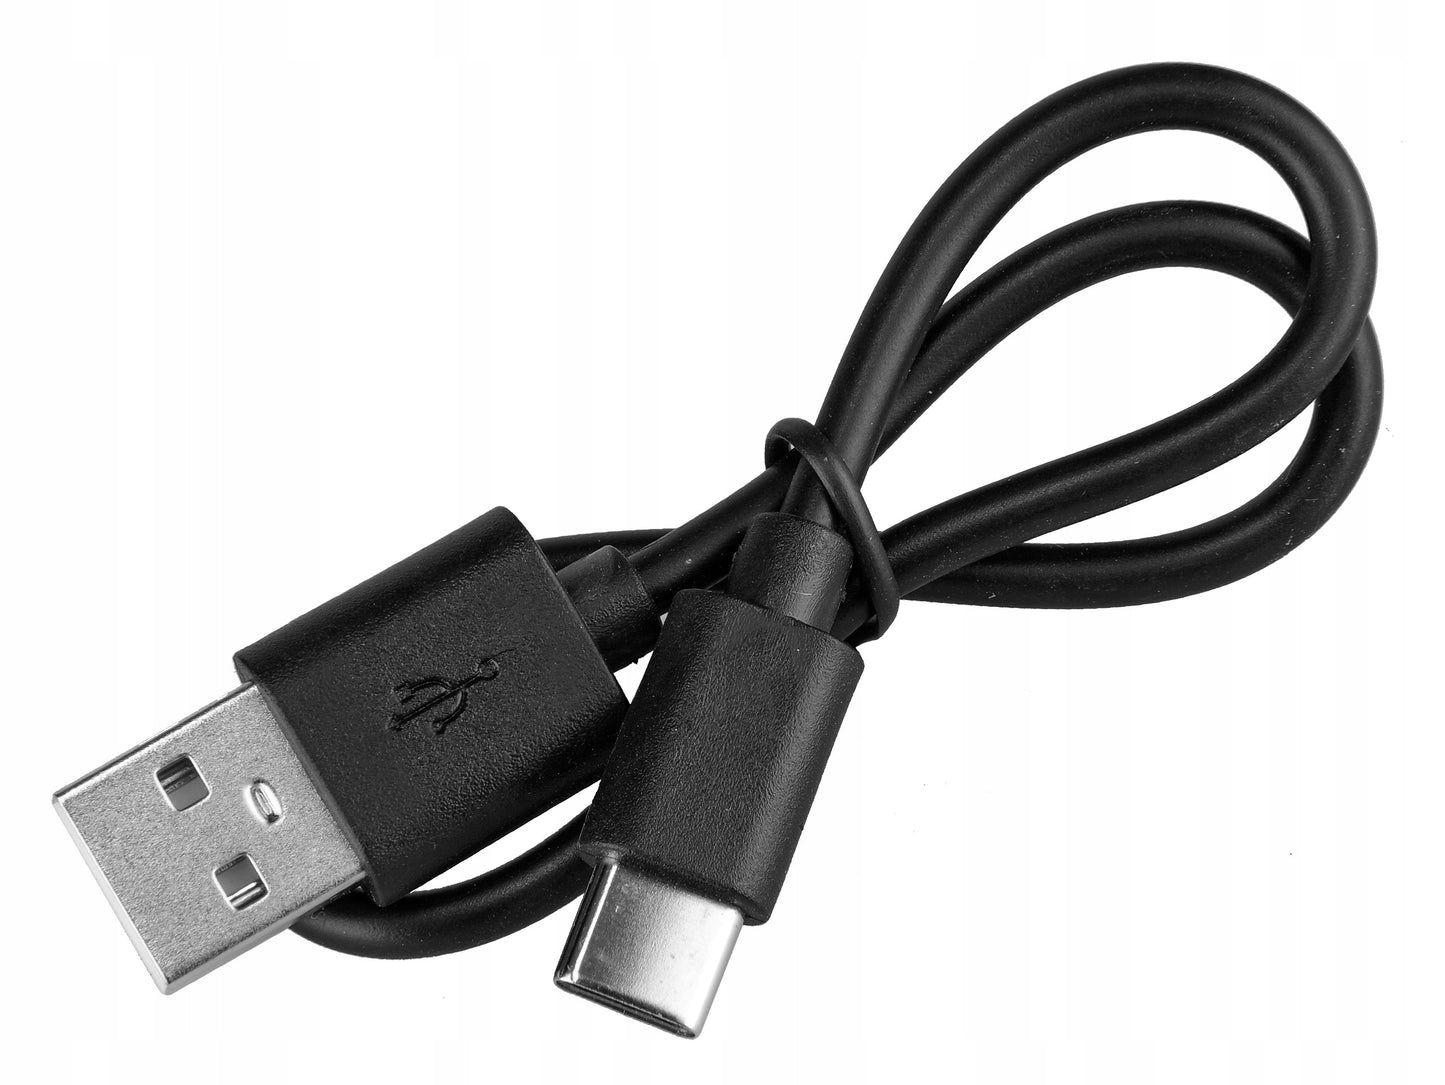 ProX 1800 Lumen Premium Line - Voorlicht - USB-C-Oplaadbaar